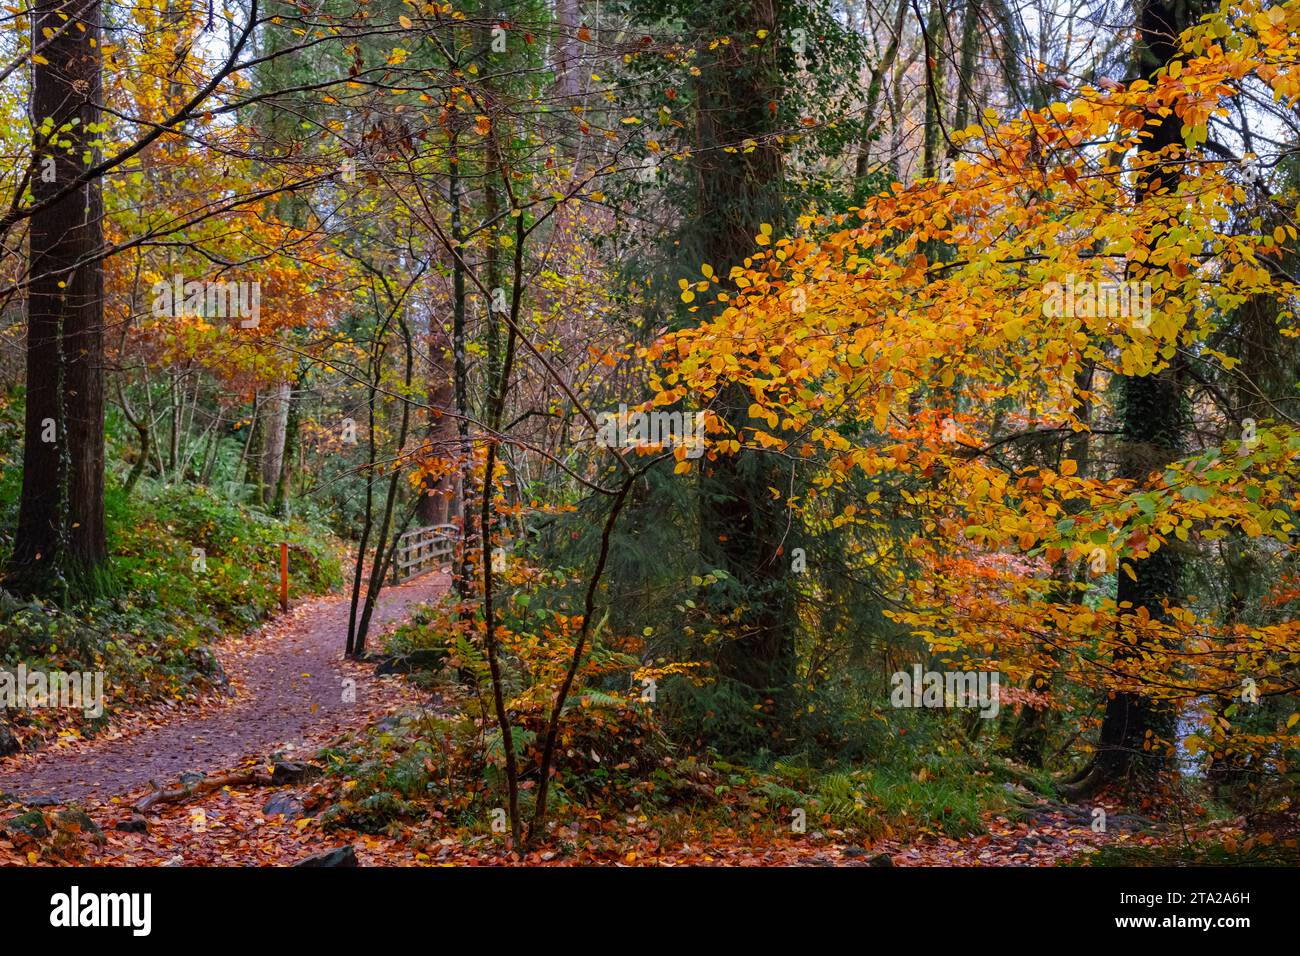 Coed Tan Dinas Walk. Sentier à travers les bois du parc forestier Gwydir en automne. Betws-y-Coed, Conwy, pays de Galles, Royaume-Uni, Grande-Bretagne, Europe. Sapins Douglas géants Banque D'Images